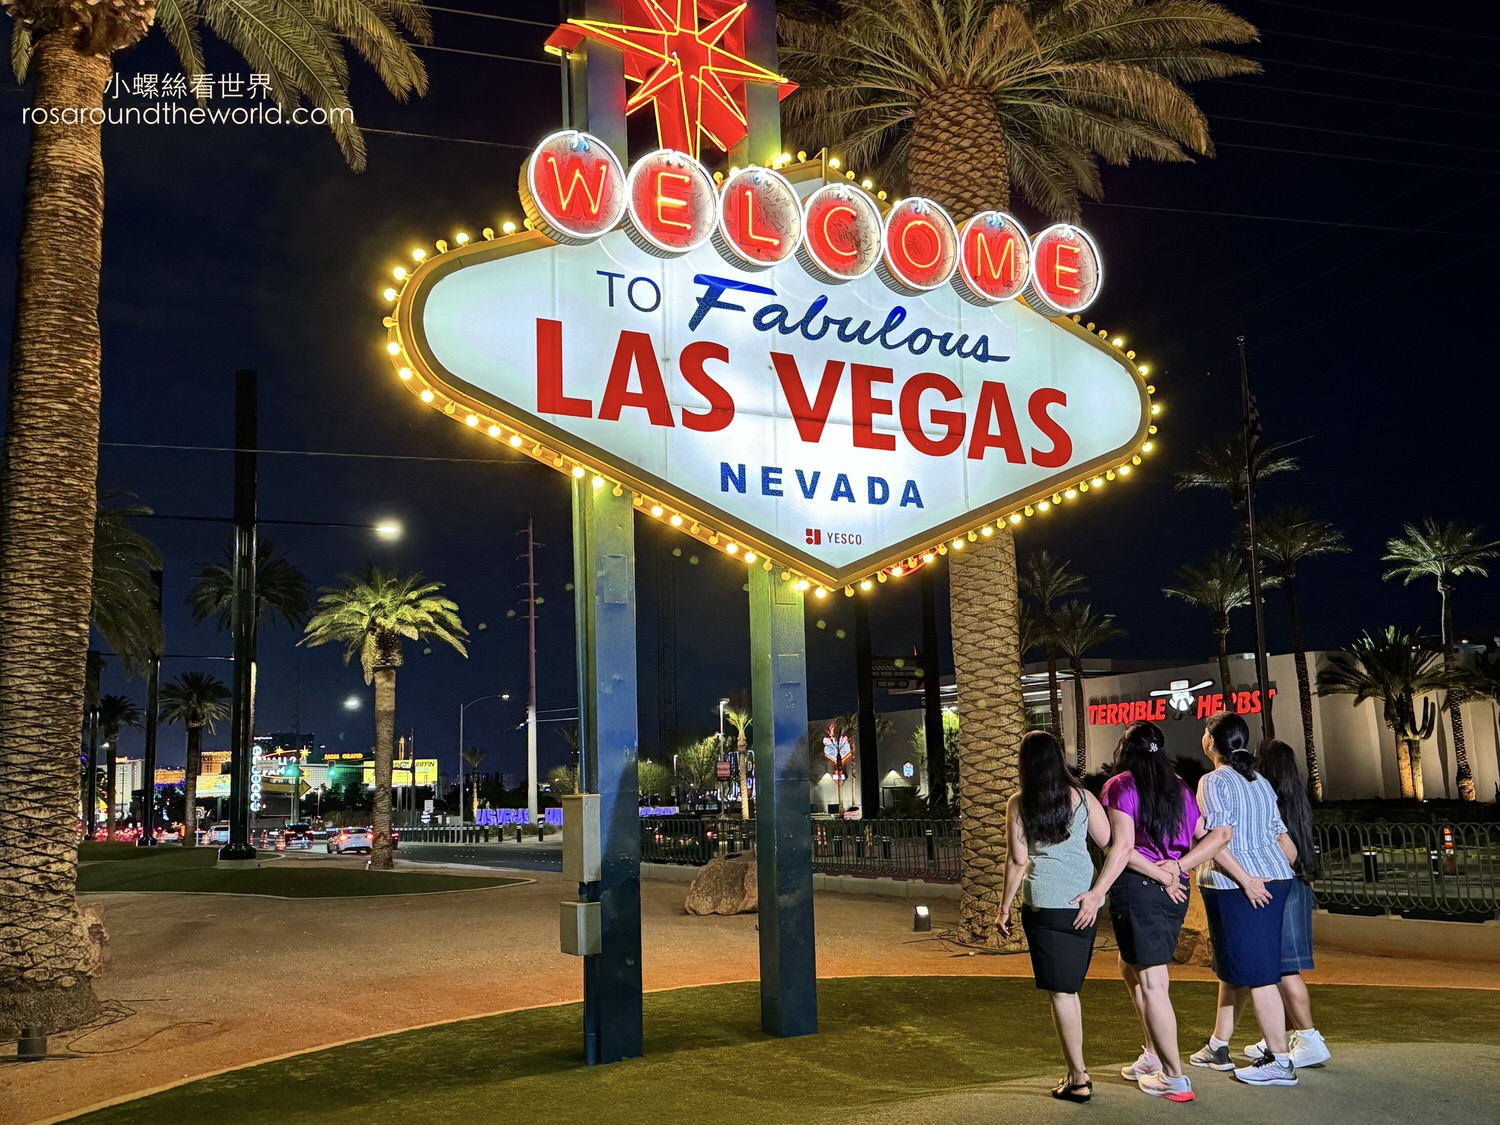 拉斯維加斯標誌 
Welcome to Fabulous Las Vegas Sign
歡迎來到絢麗的拉斯維加斯